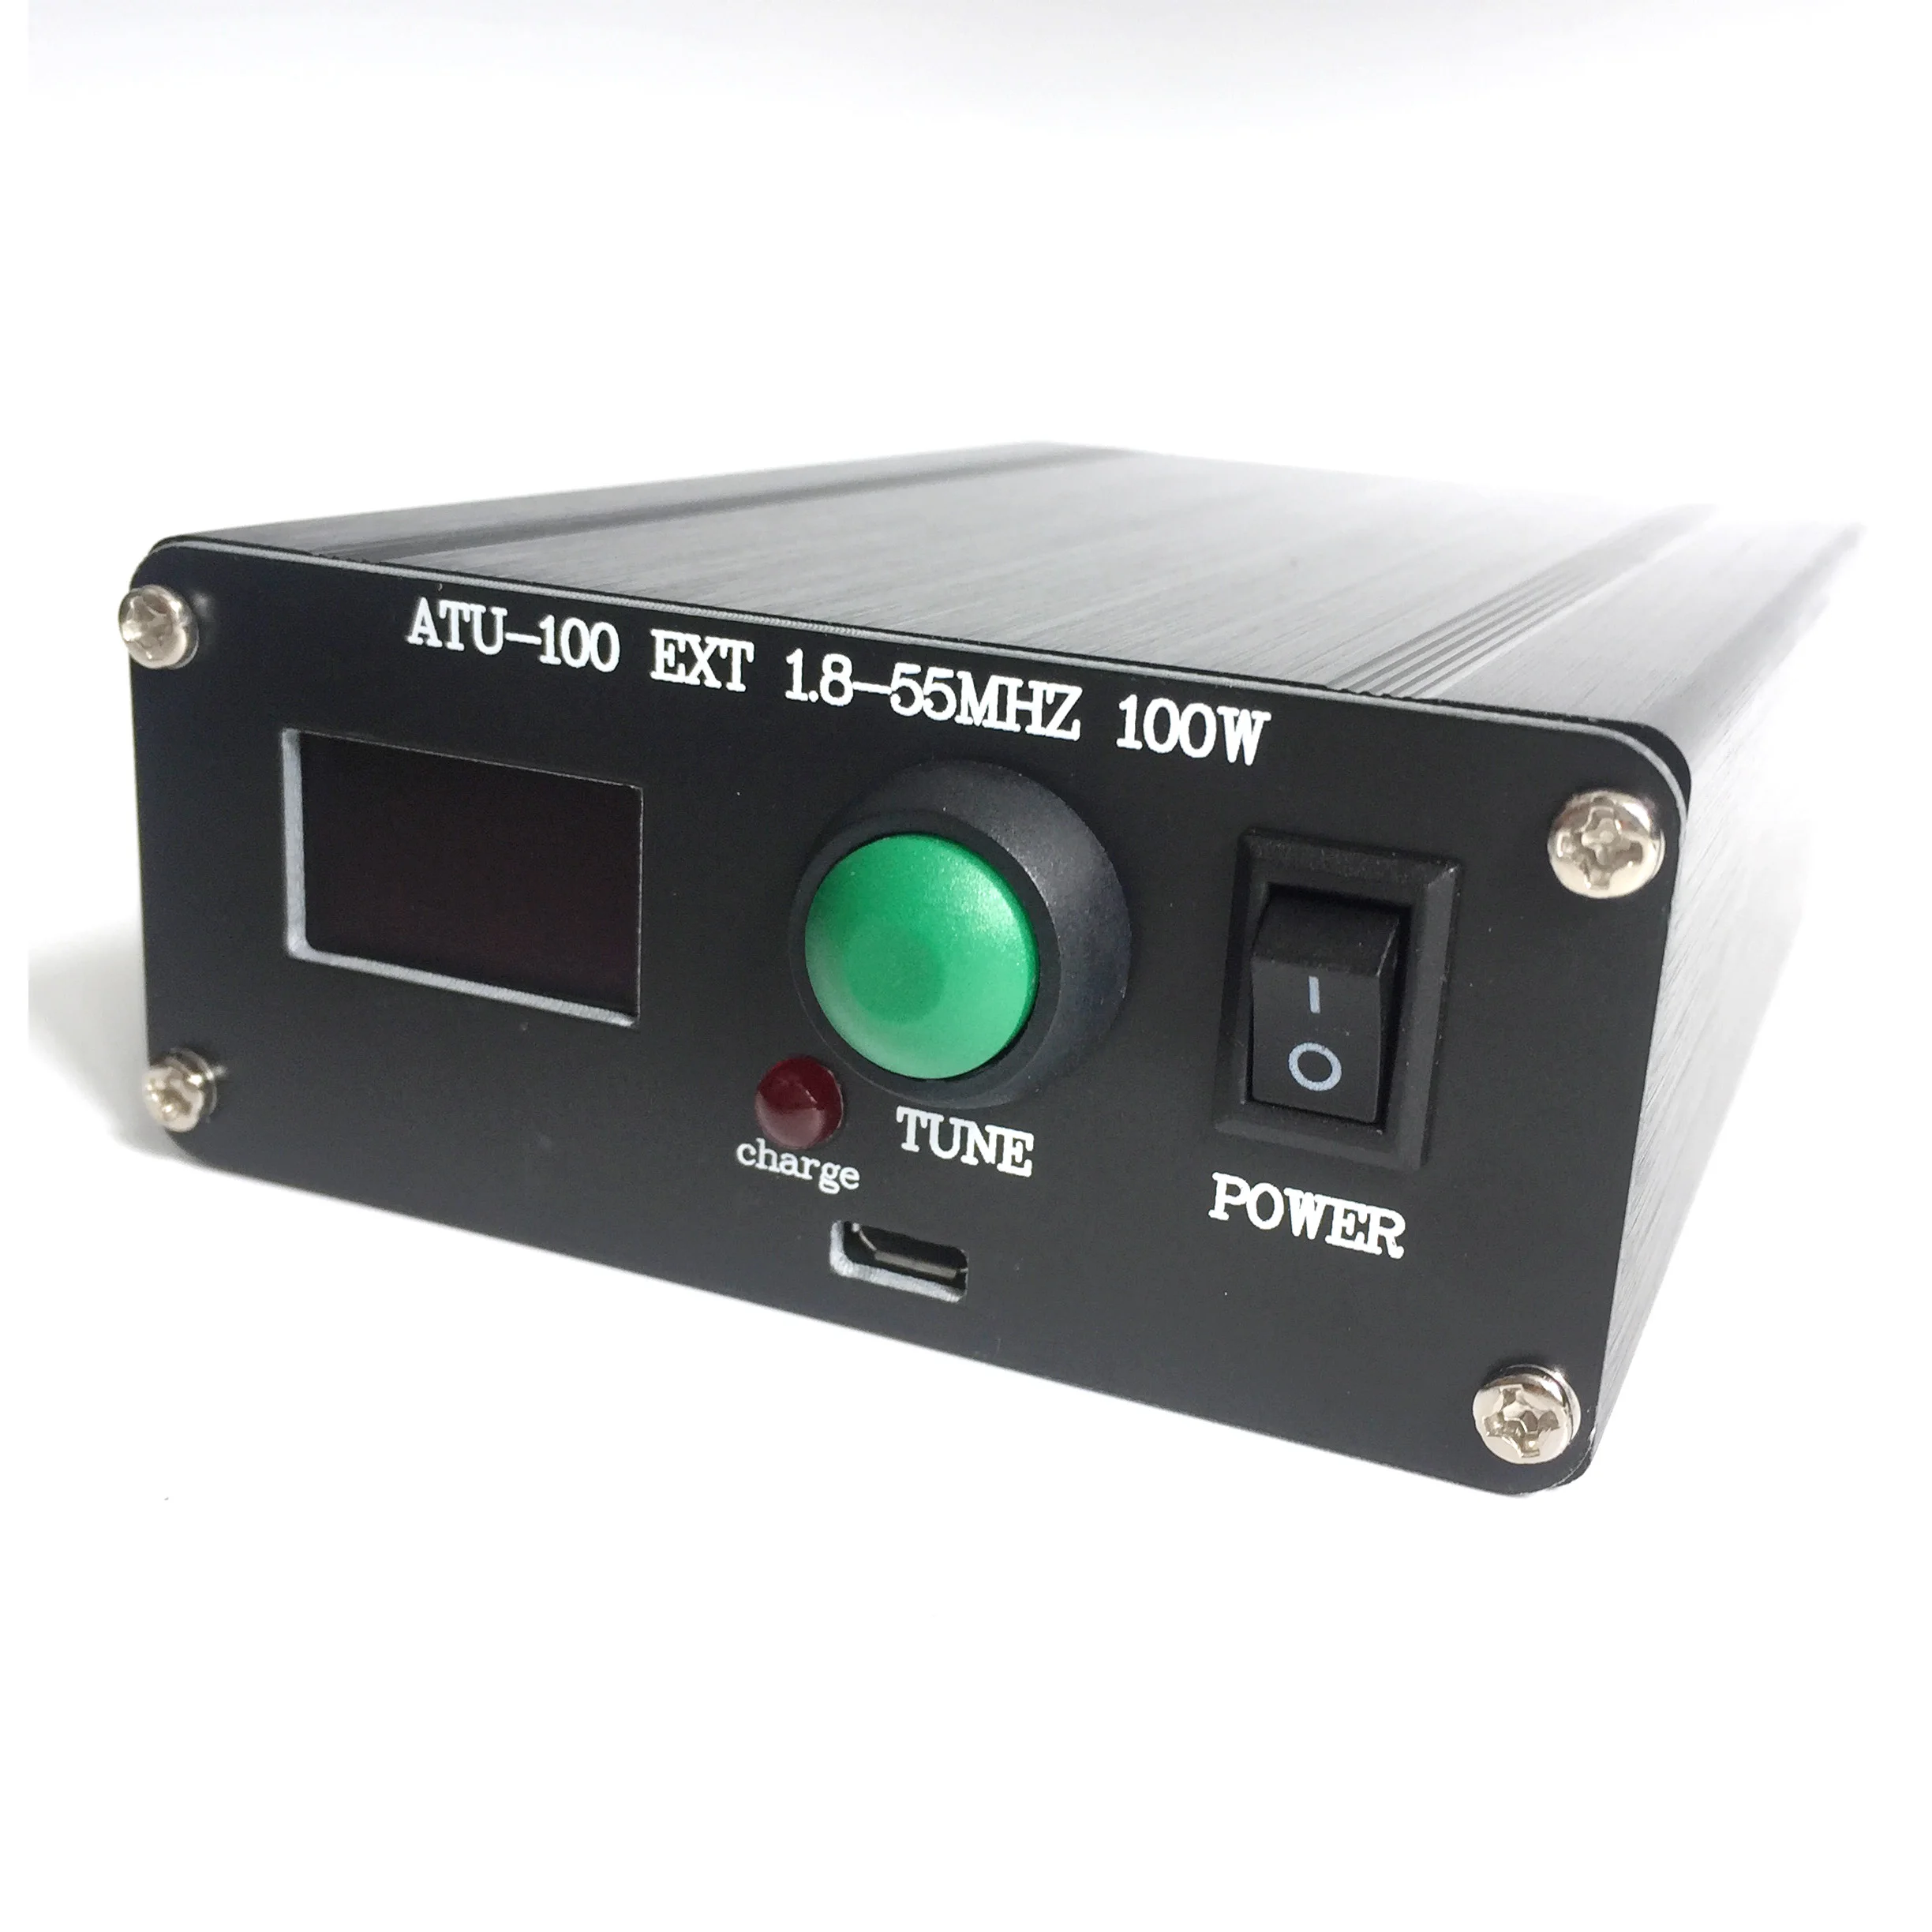 Готовый мини-автоматический антенный тюнер ATU-100 ATU-100 1,8-50 МГц от N7DDC 7x7 + Mini 0.96 OLED + Металлический корпус + батарея 1350 МА3